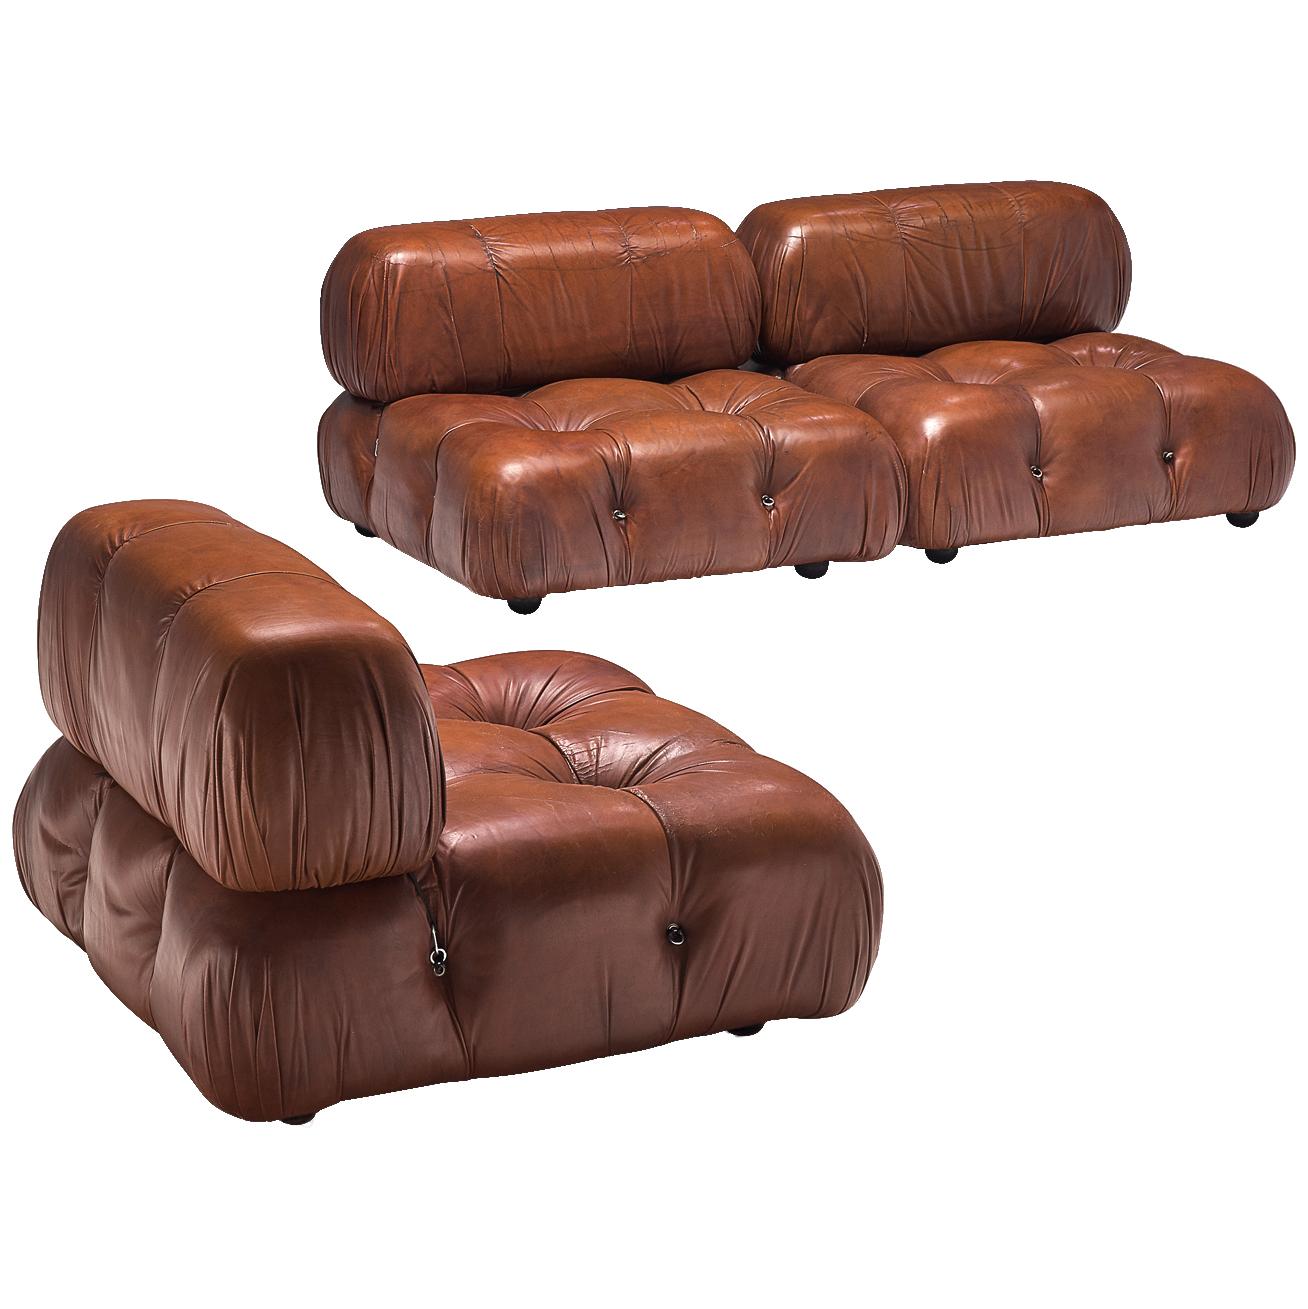 Mario Bellini 'Camaleonda' Modular Sofa in Original Leather